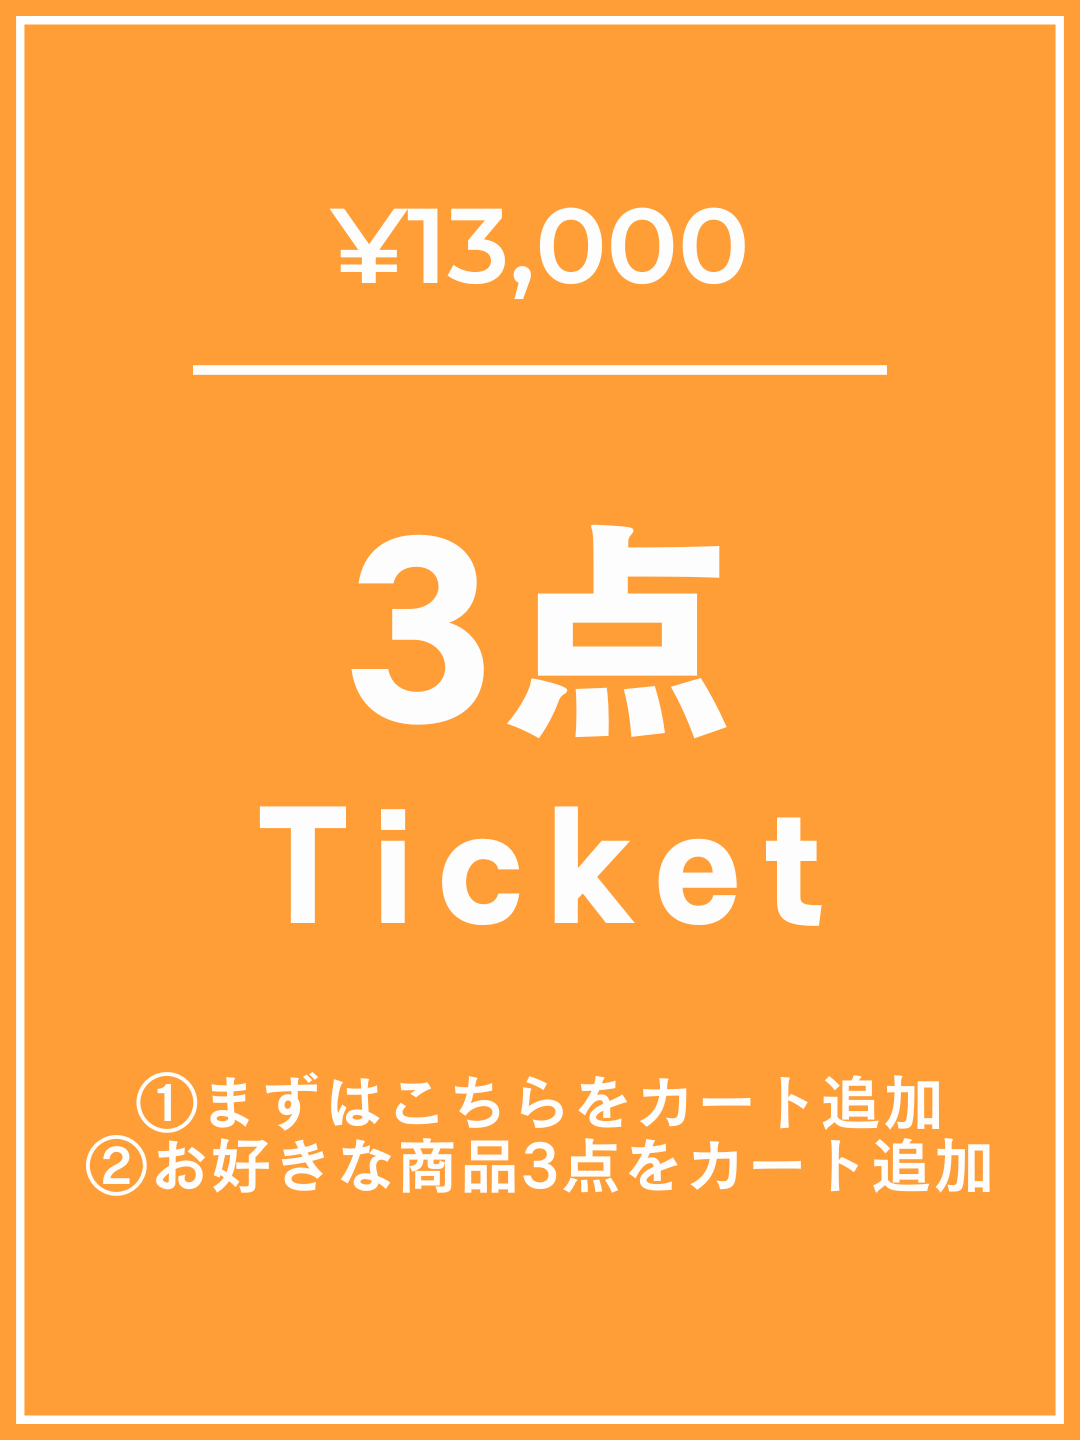 【1番初めにこちらをカートイン】¥13,000チケット